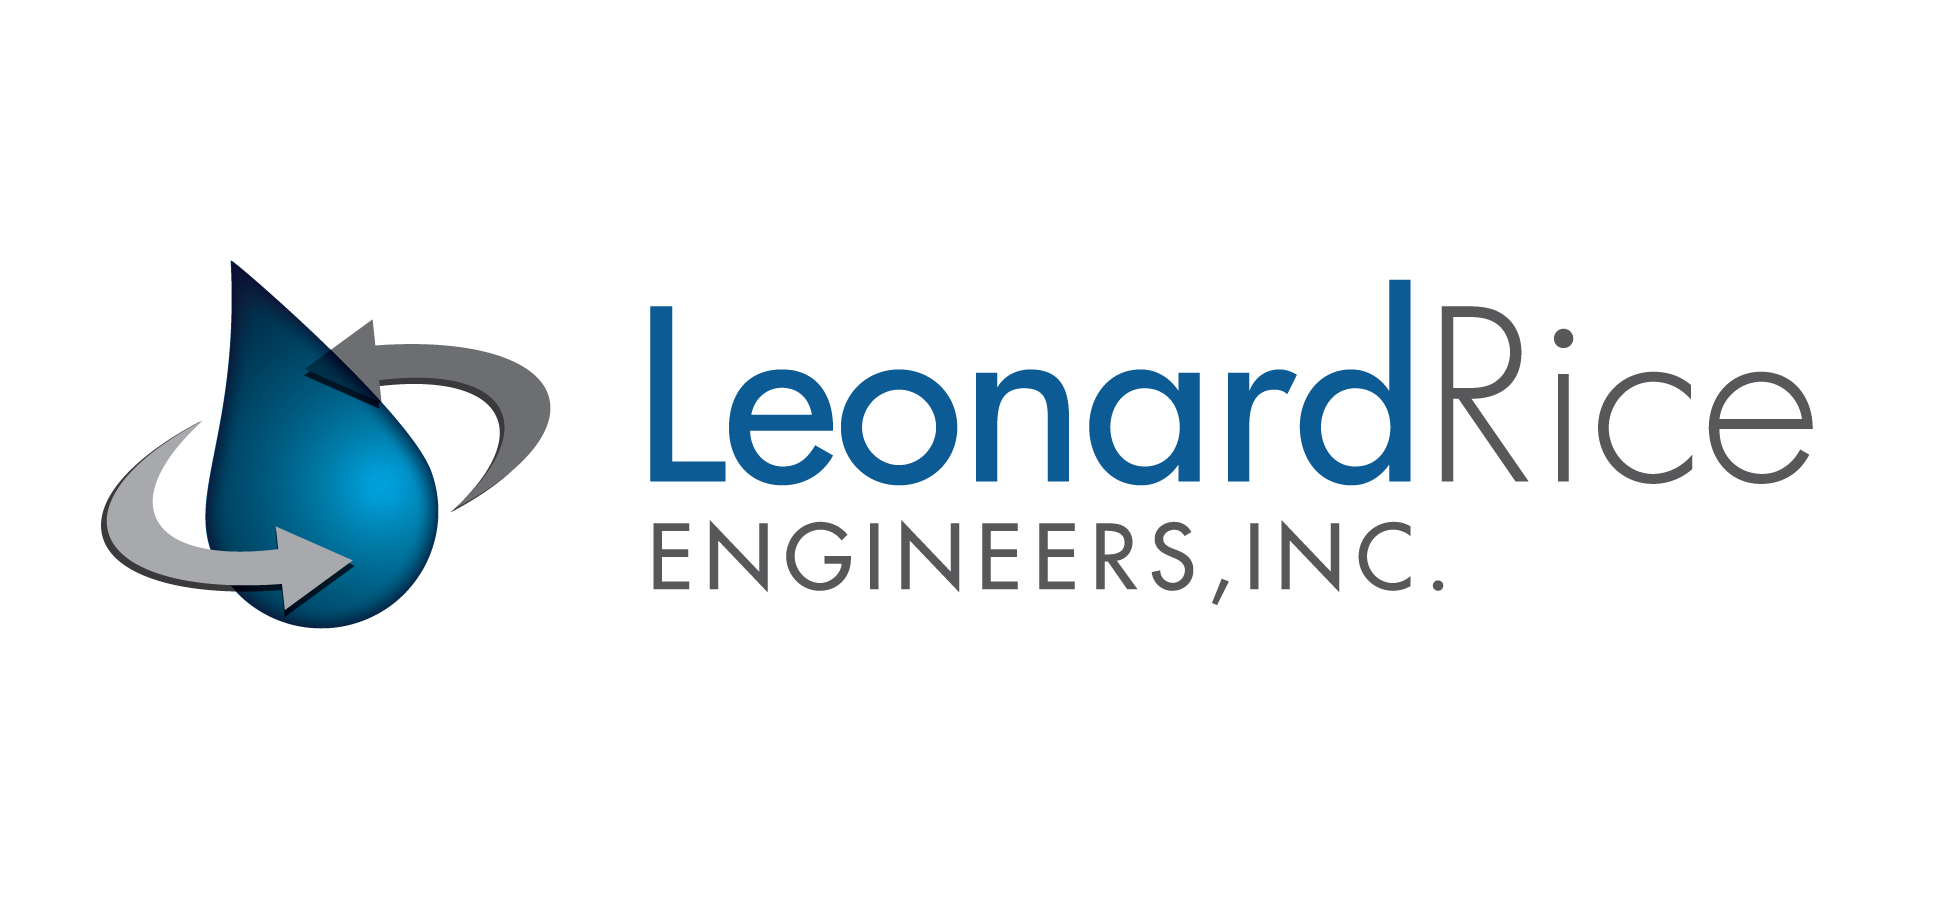 Leonard Rice Engineers